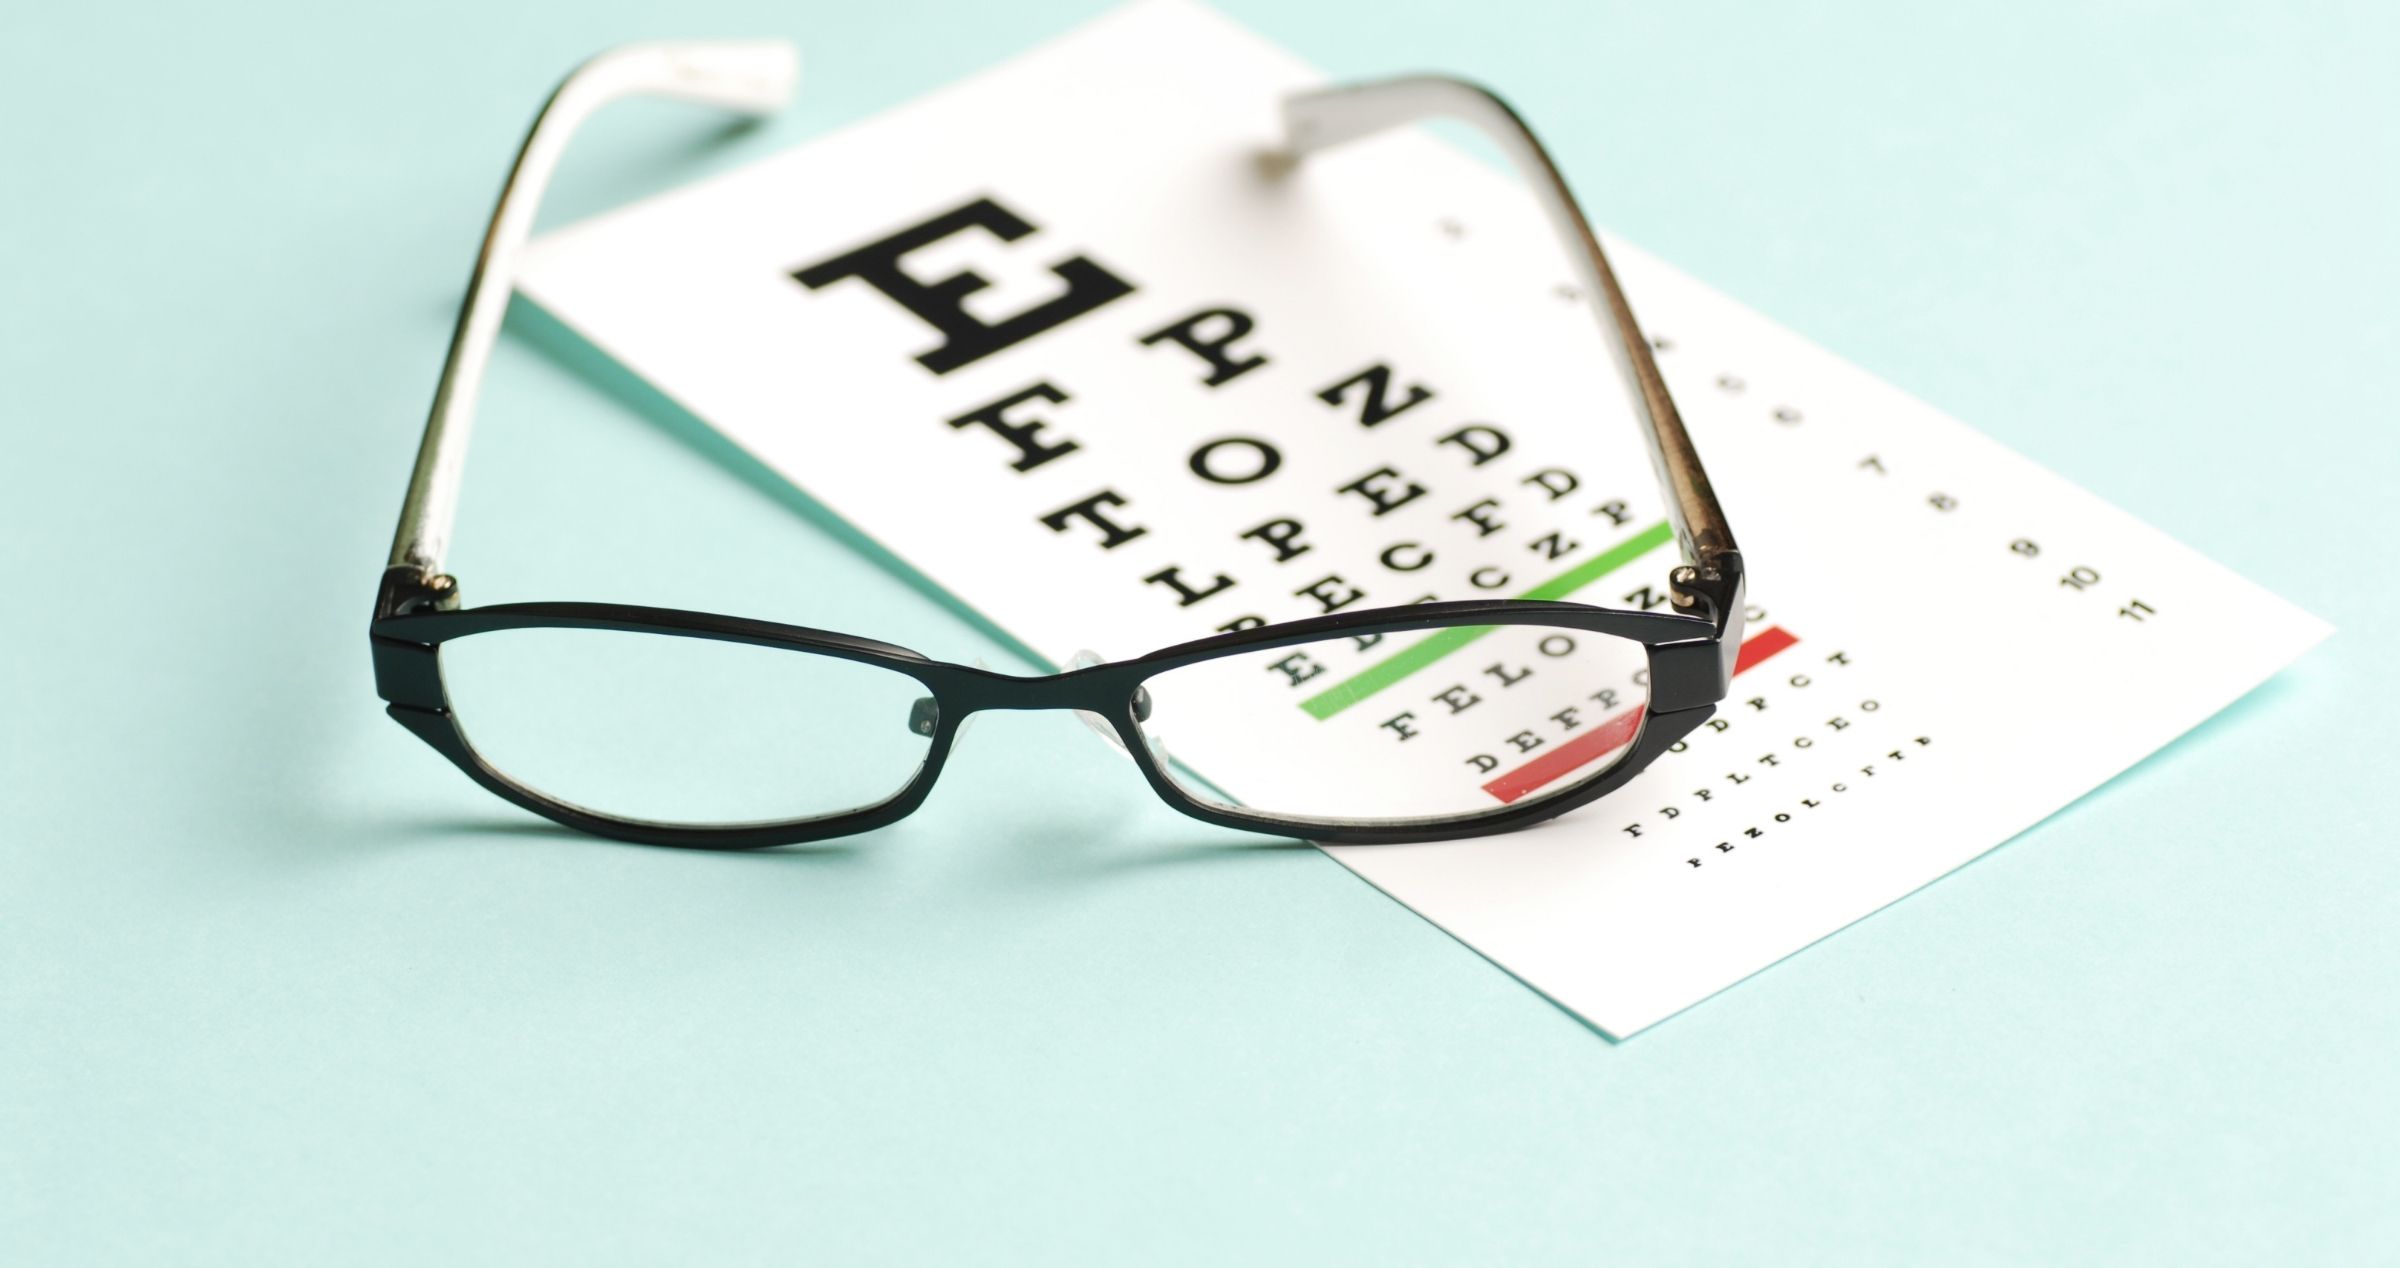 Image of reading glasses on eye sight test